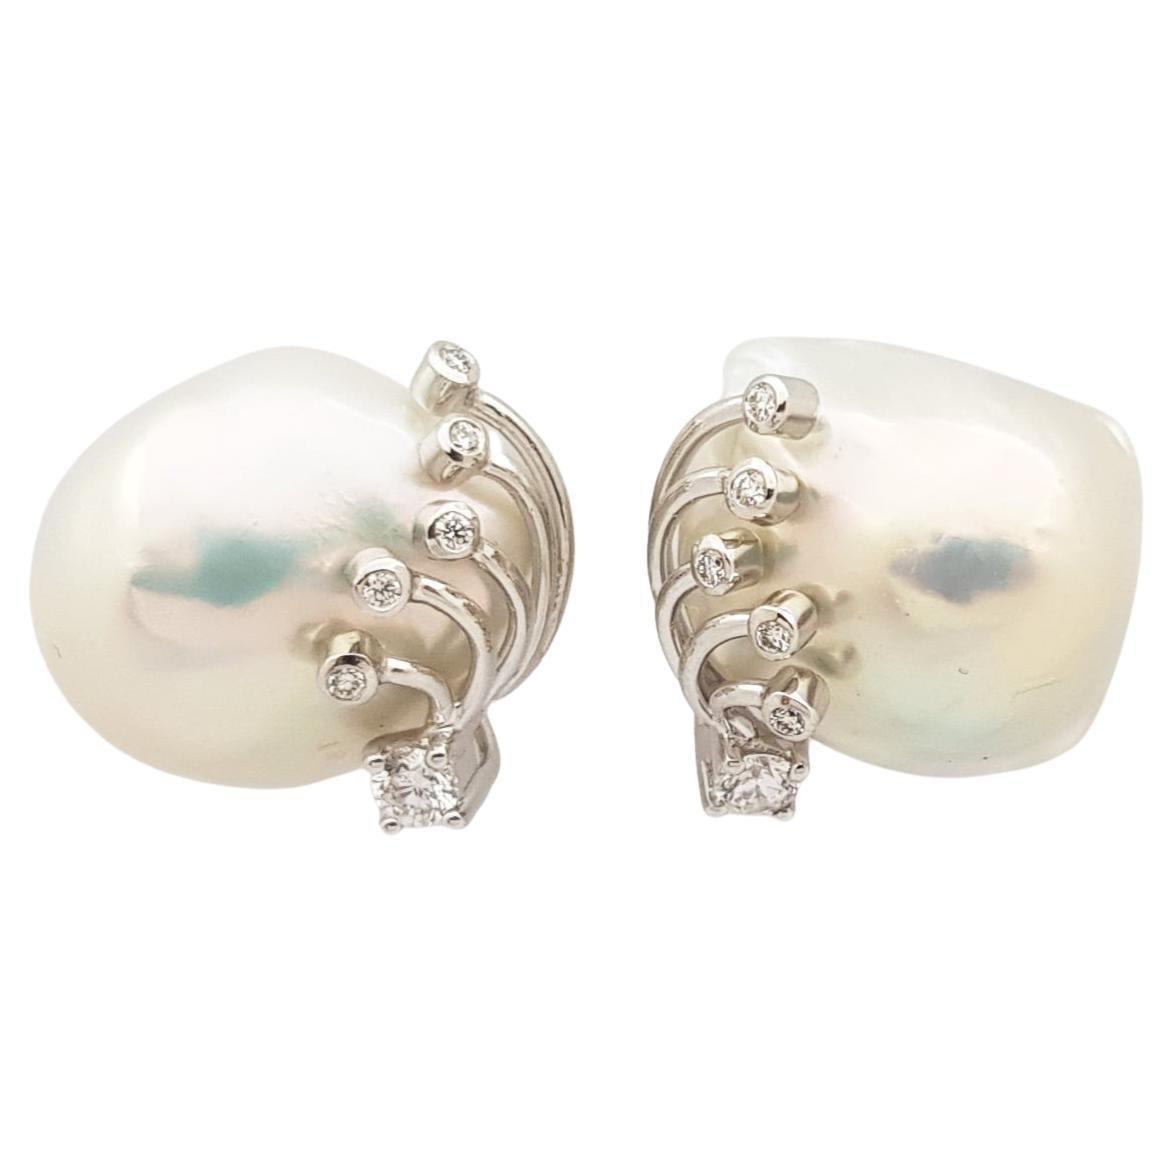 Süßwasserperlen-Ohrringe mit Diamanten in 18 Karat Weißgold-Fassung